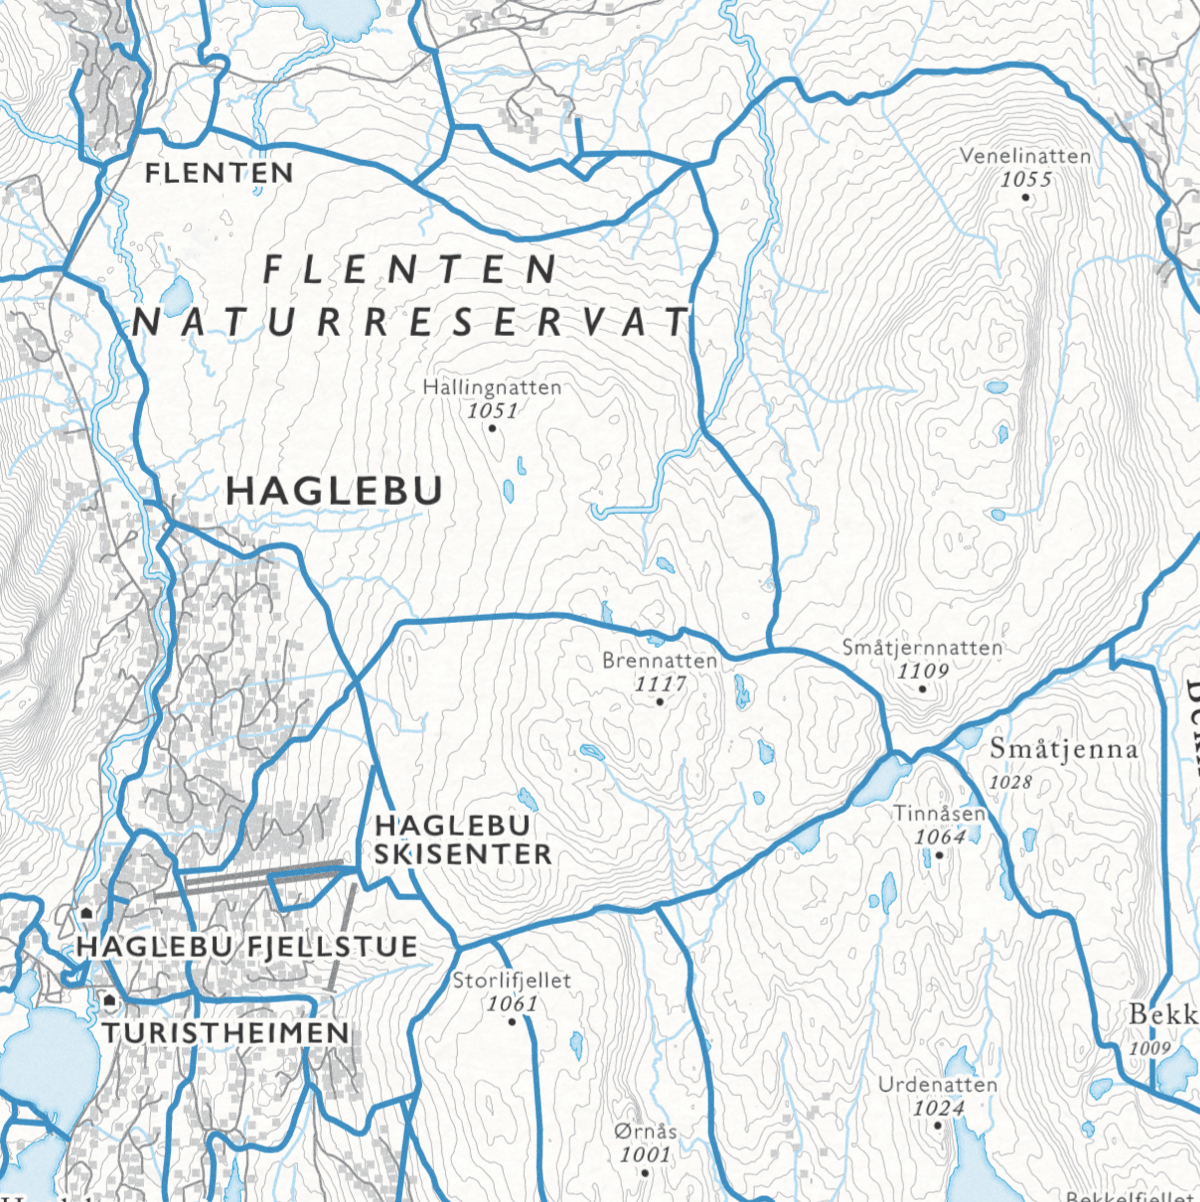 Skikart Norefjell (50x70 cm) - Dapa Maps